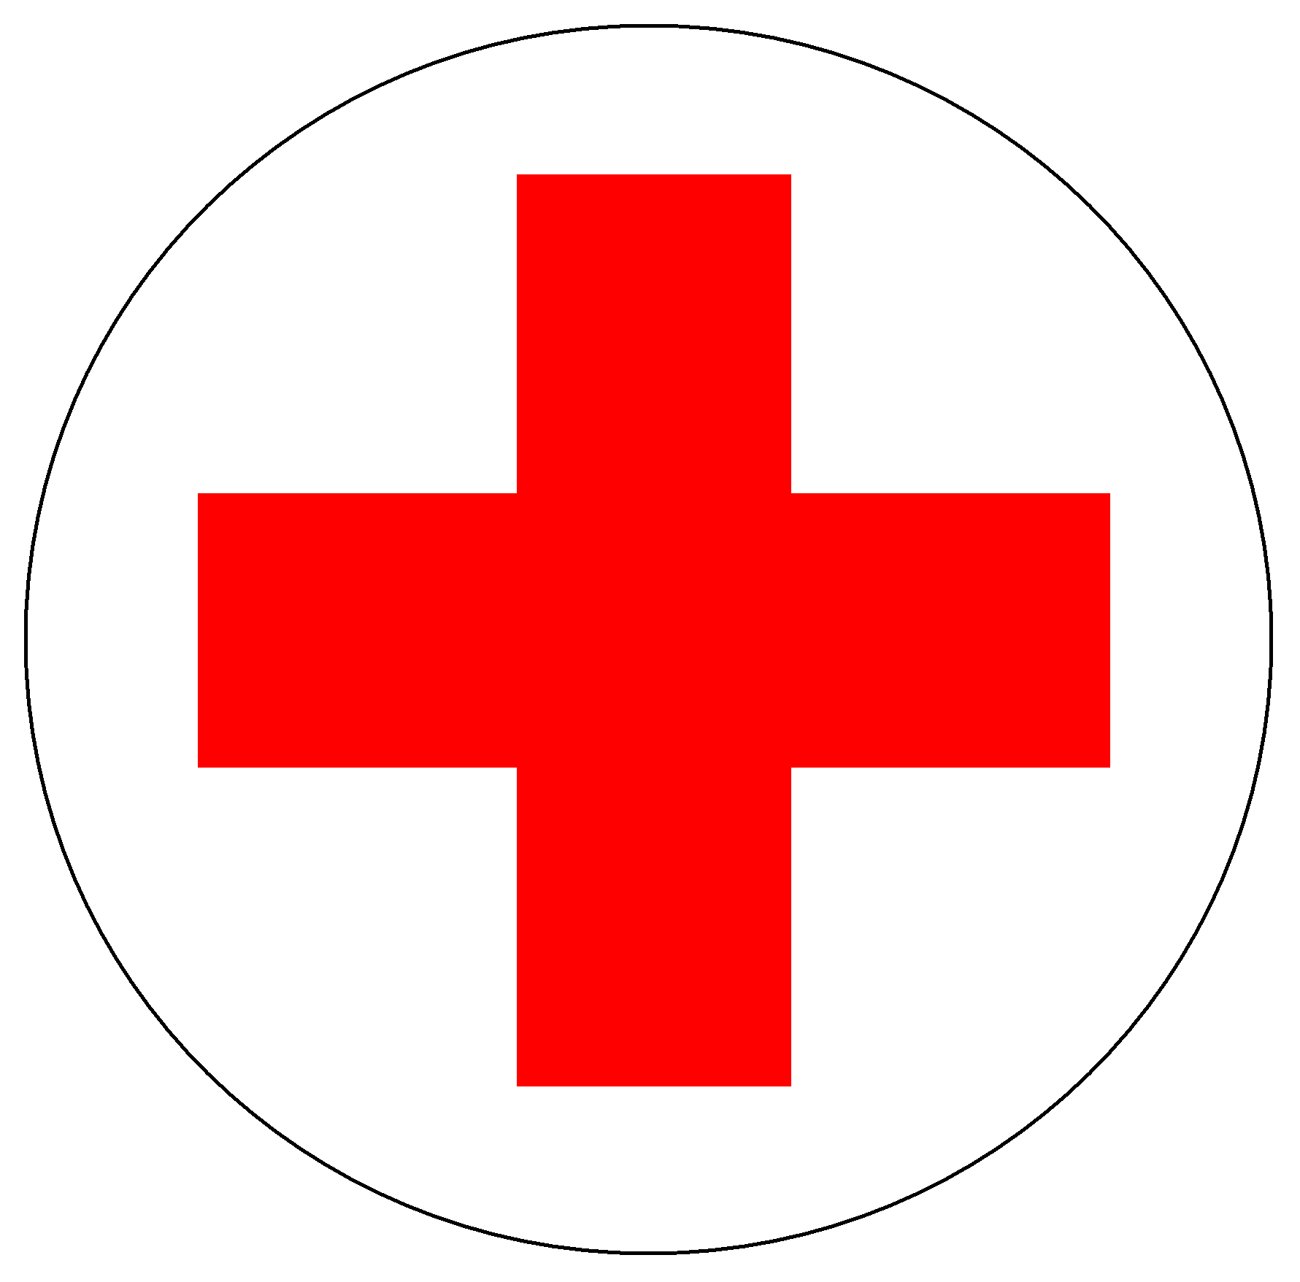 American Red Cross Logo - American Red Cross Logo, American Red Cross Symbol, Meaning, History ...